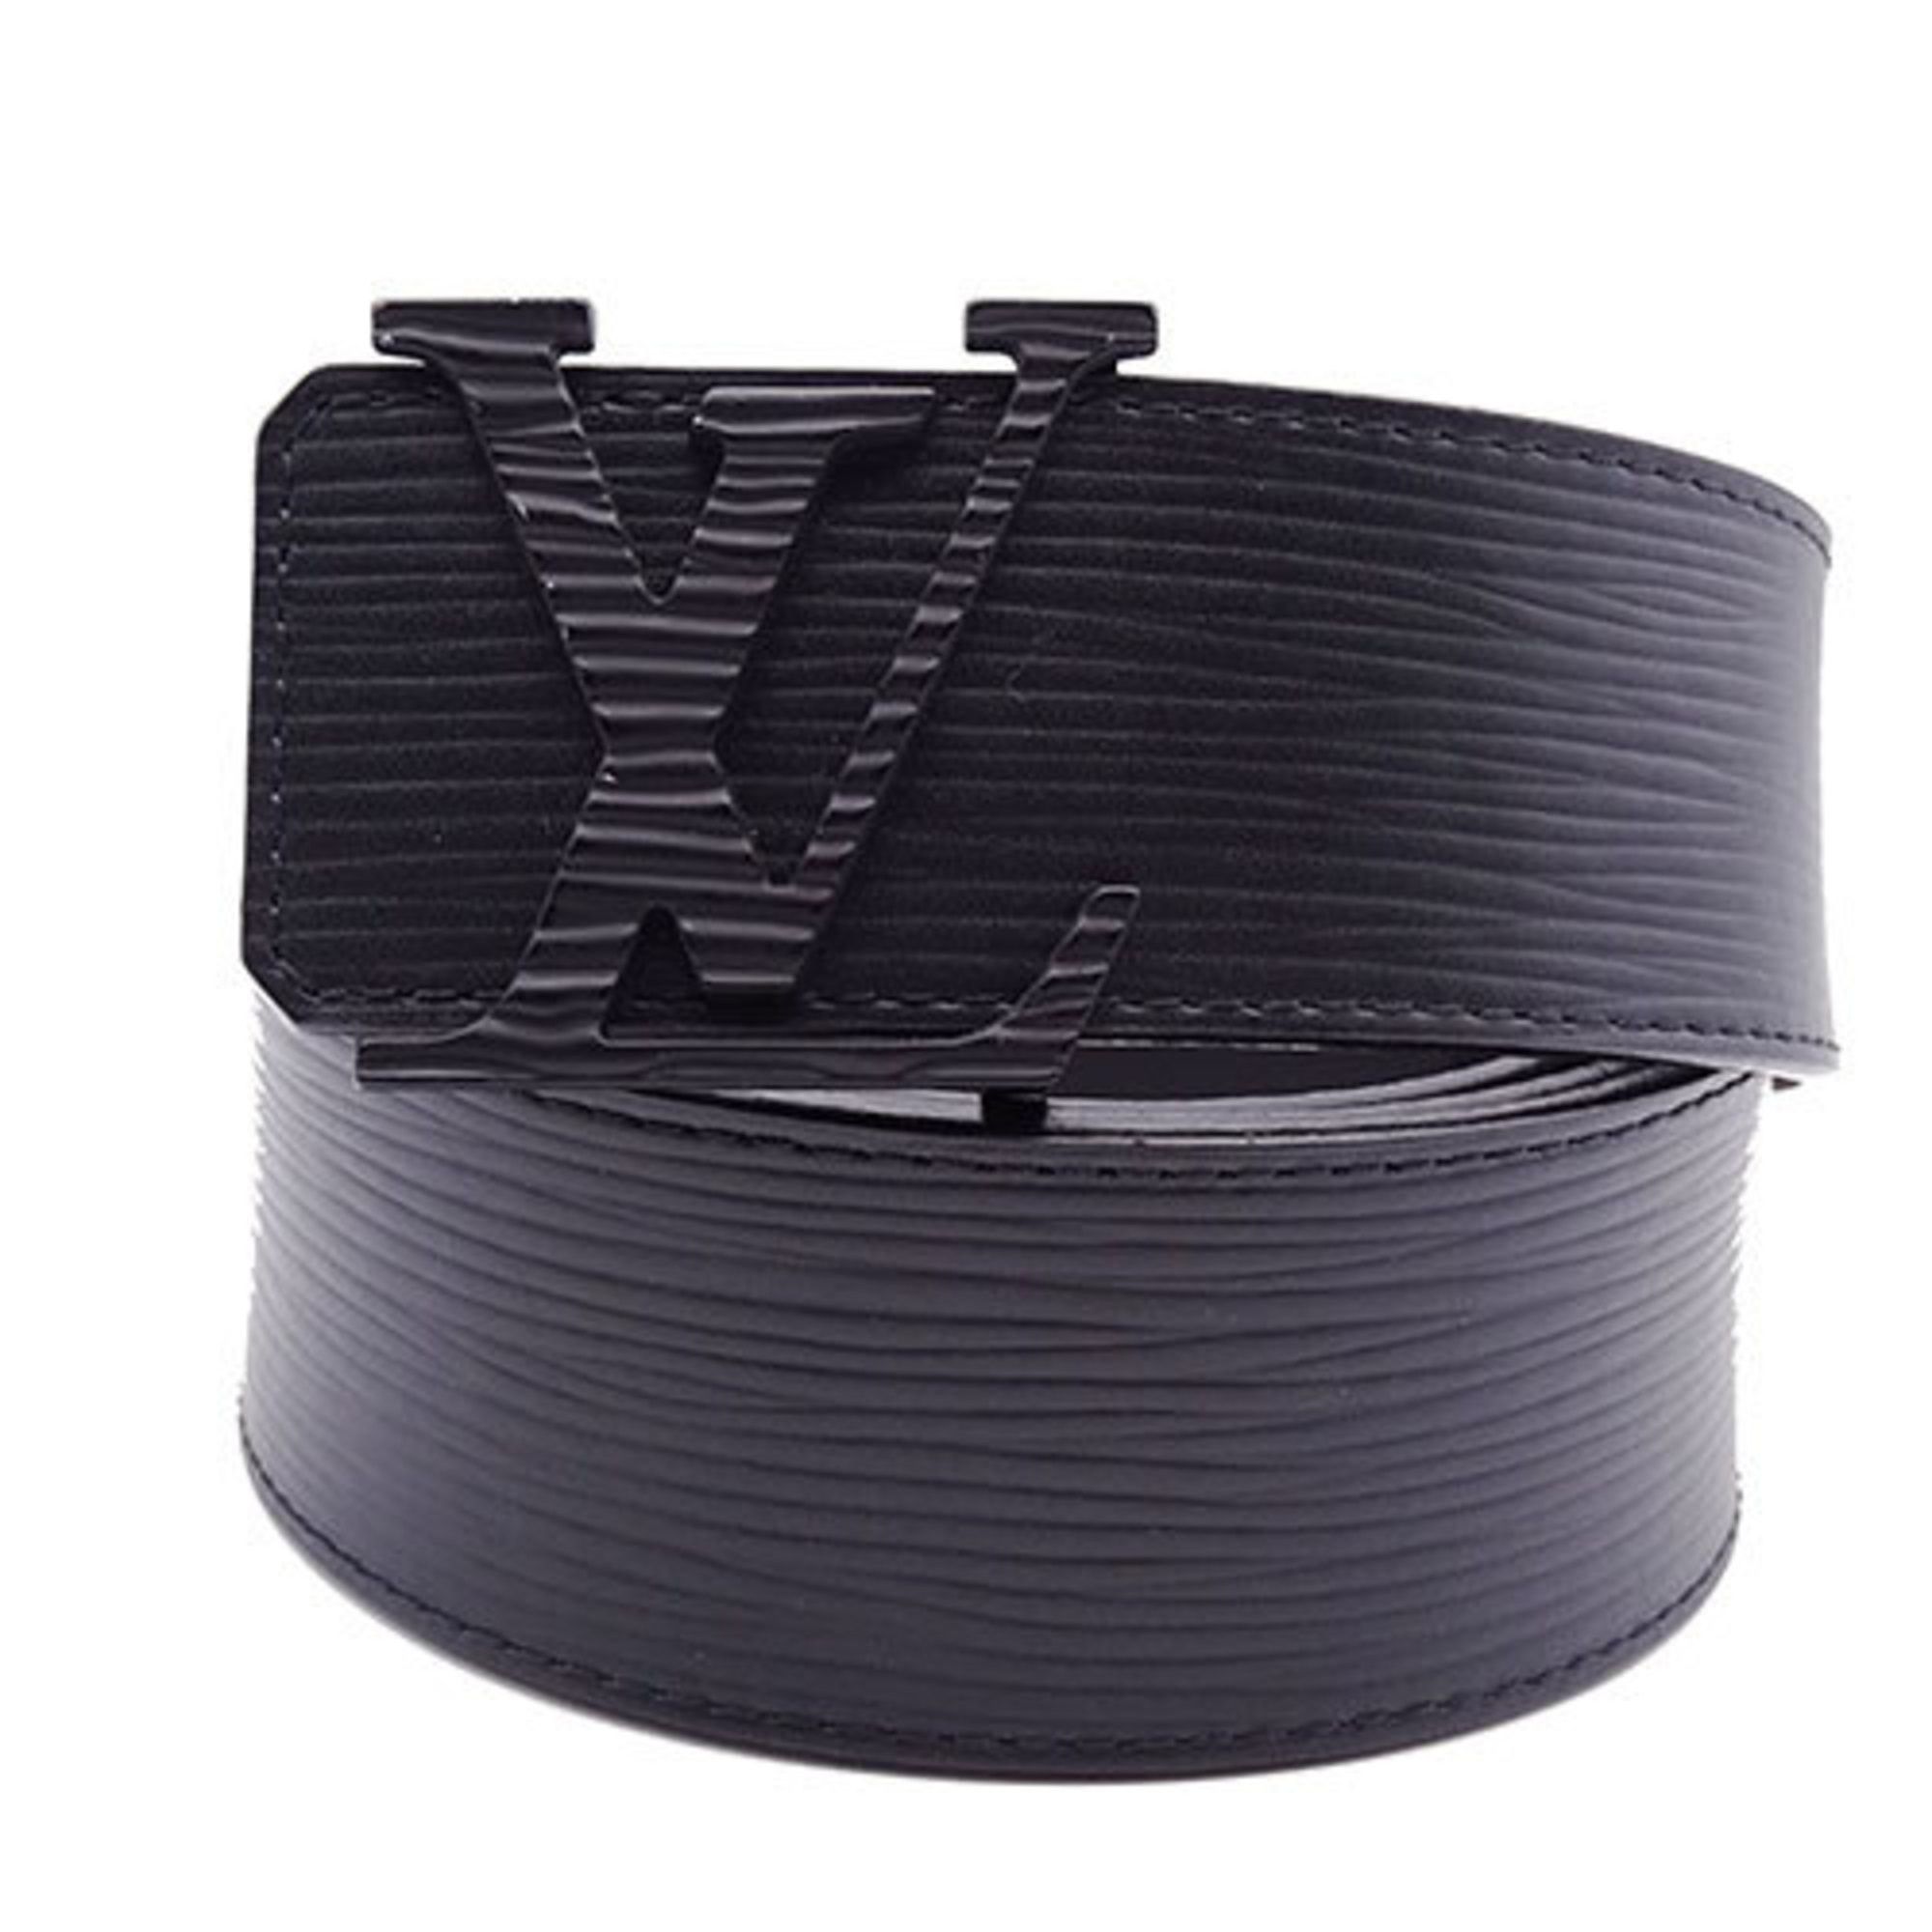 Louis Vuitton Black Epi Leather Initials Belt Size 95 CM Louis Vuitton